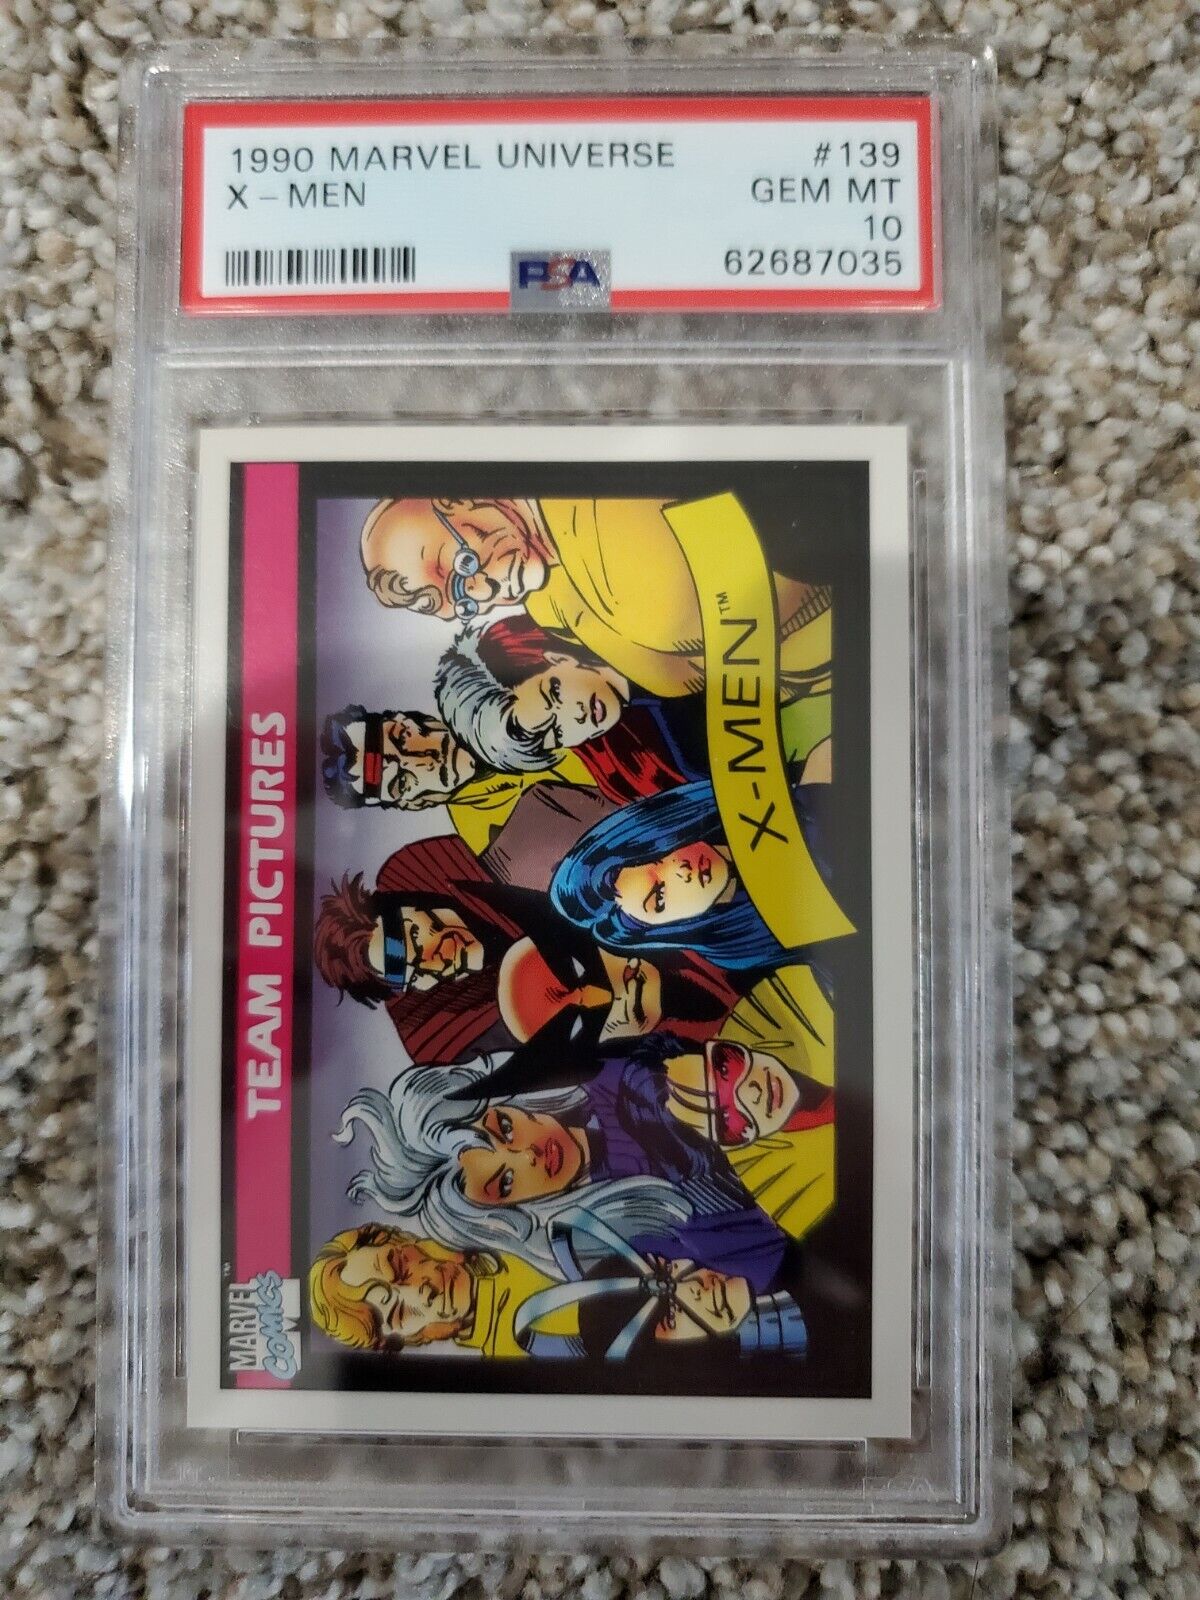 1990 Marvel Universe X-Men #139 PSA 10 GEM Mint with photo 62687035